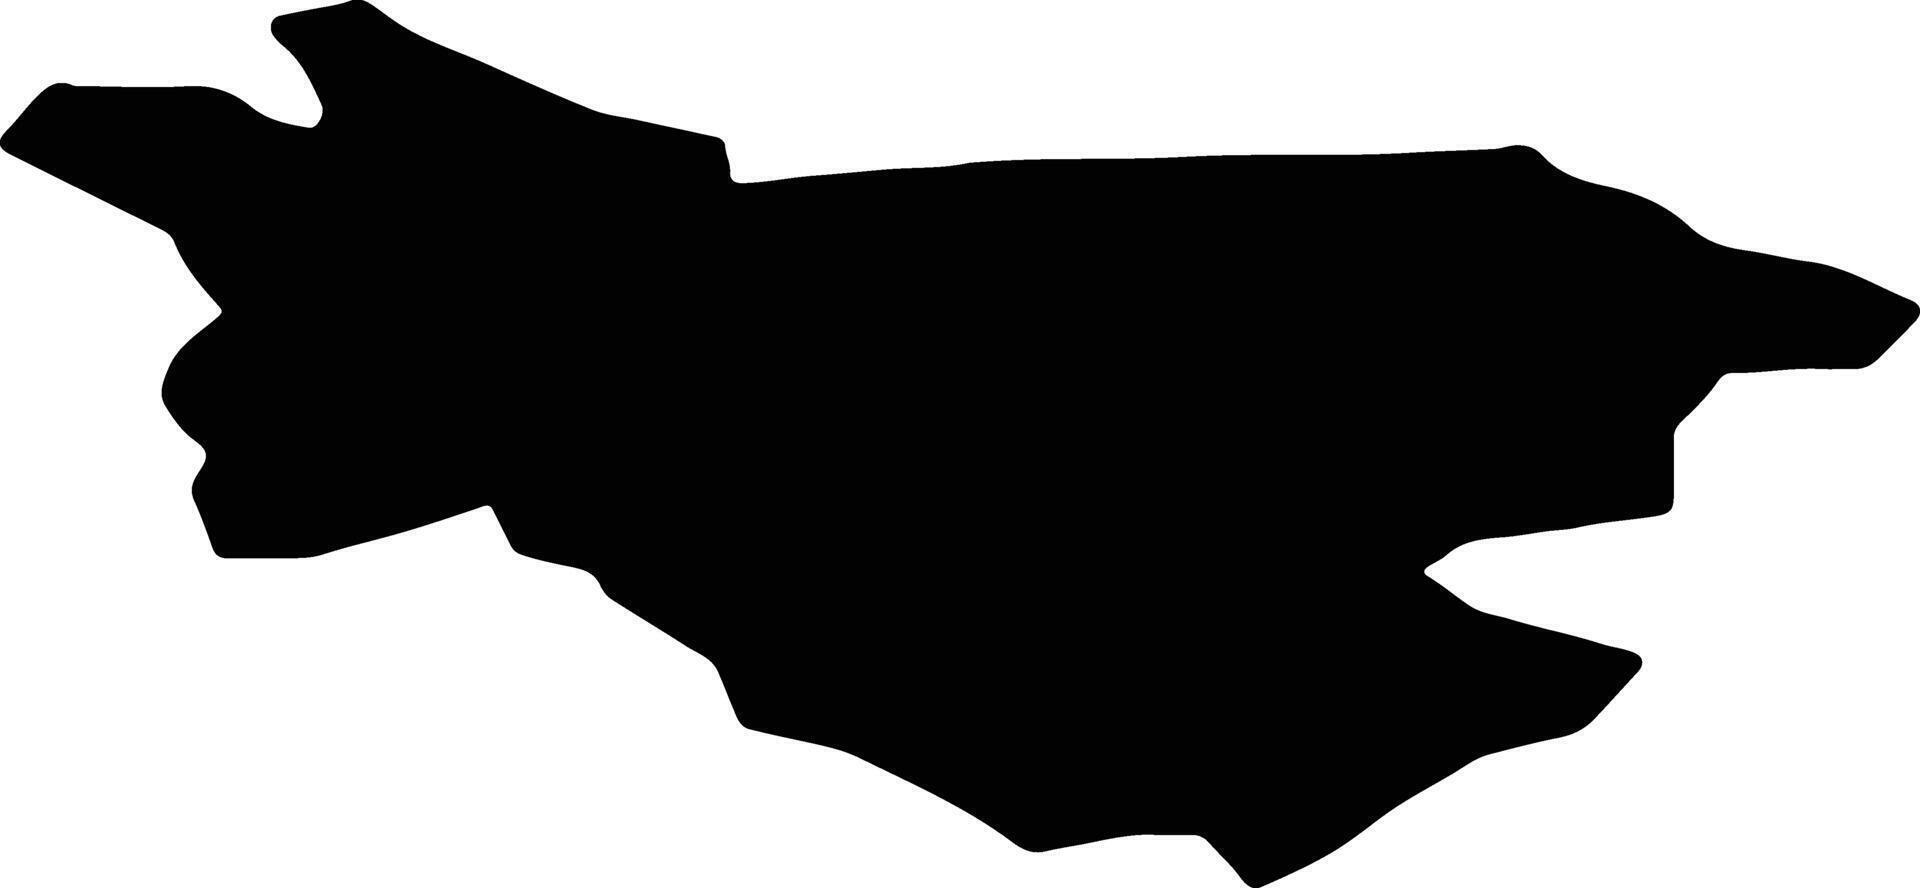 Burtnieku Lettland Silhouette Karte vektor